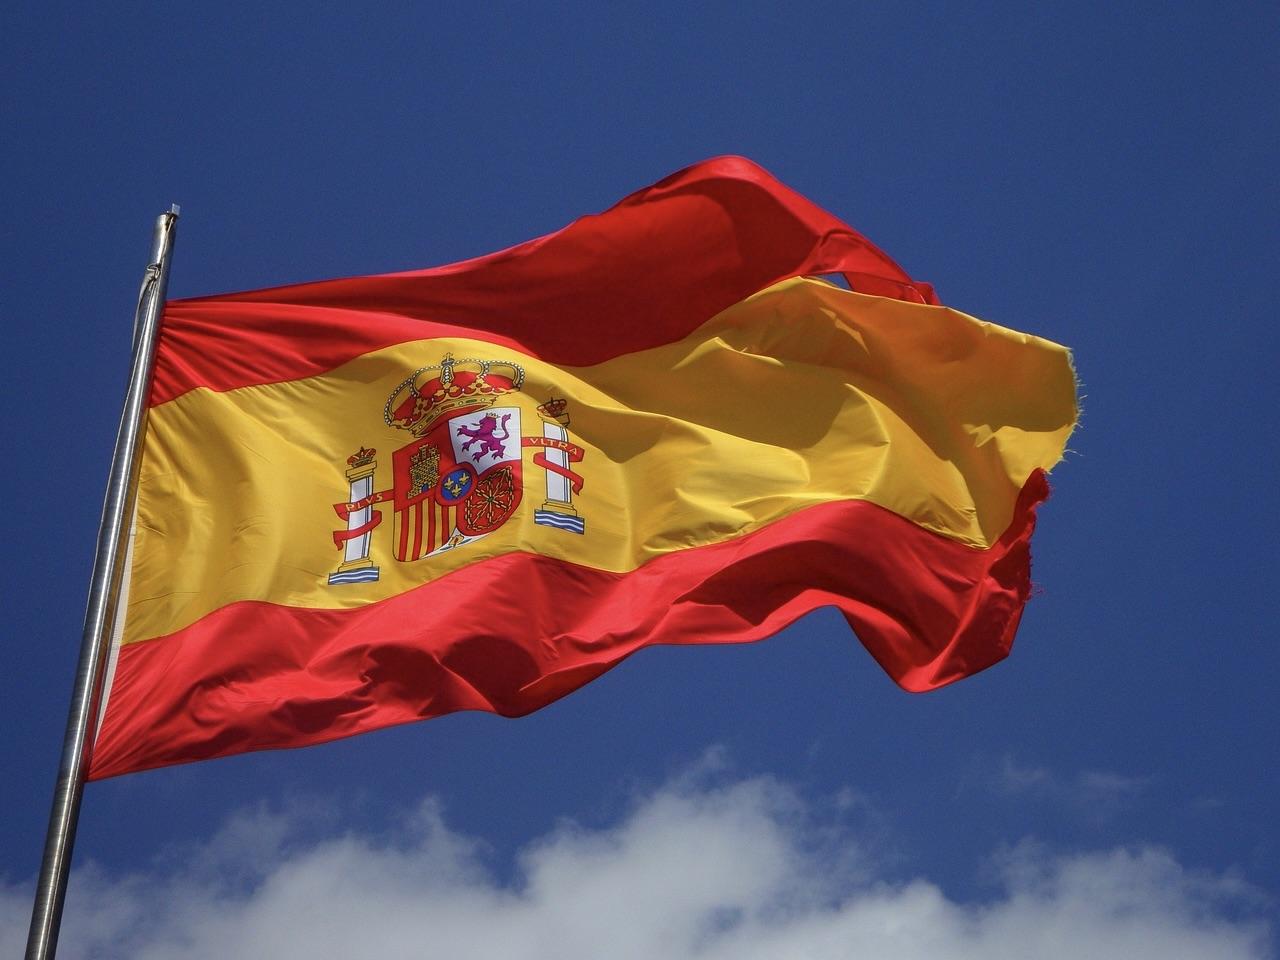 Abierta la inscripción para la jura de bandera civil del próximo 28 de septiembre en Jerez